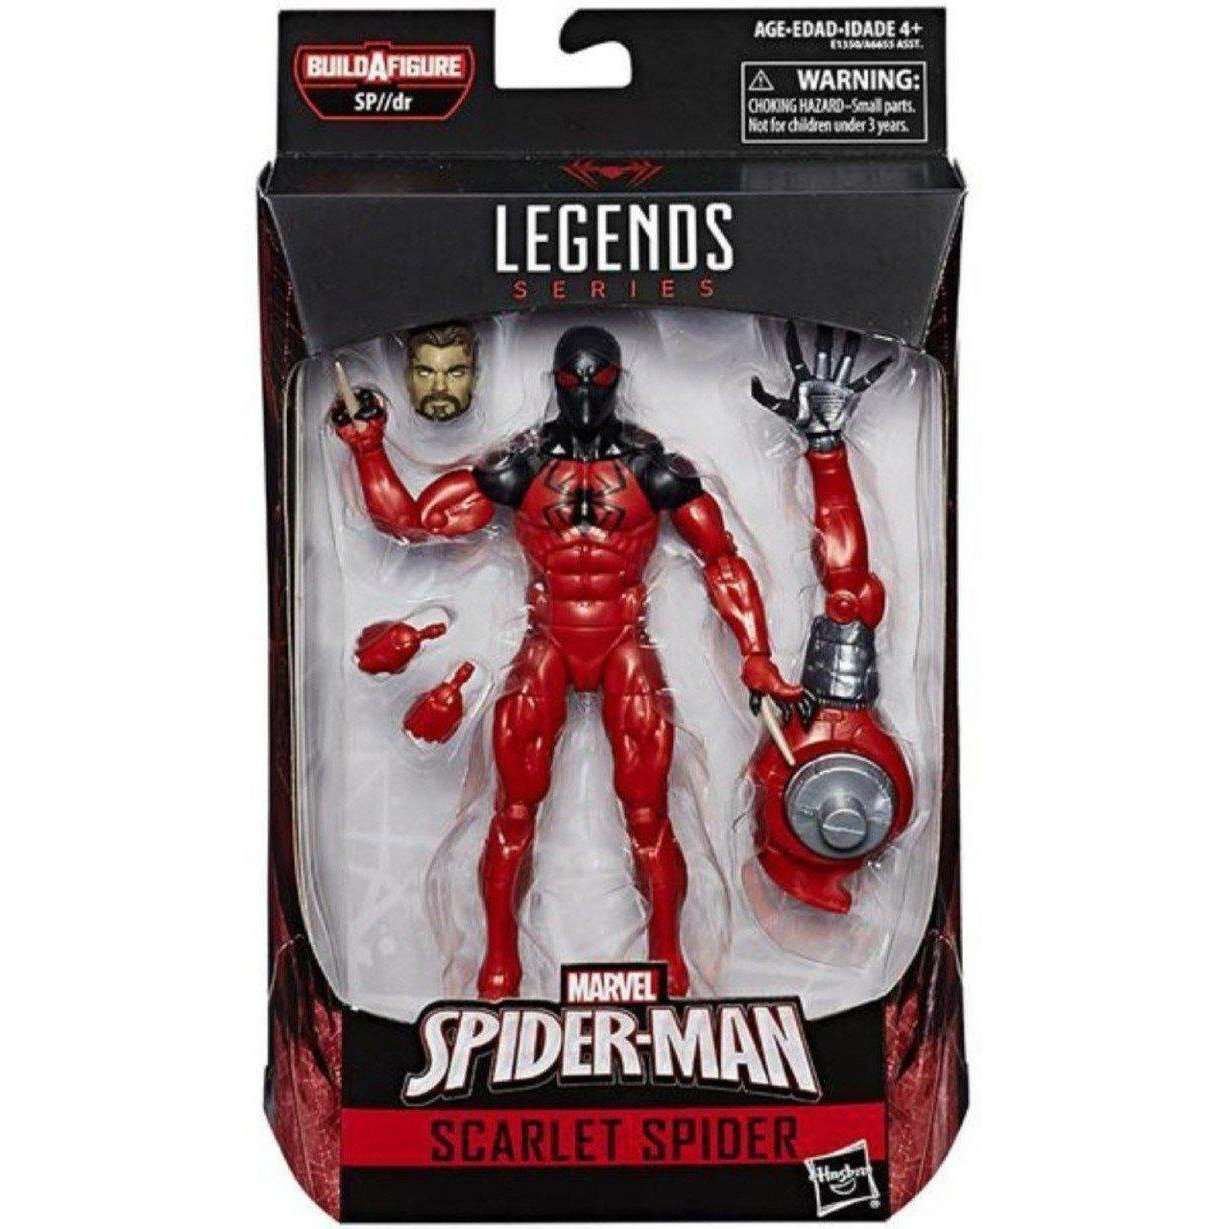 Image of Spider-Man Marvel Legends Wave 10 (SP//DR BAF) - Scarlet Spider (Modern Ver.)